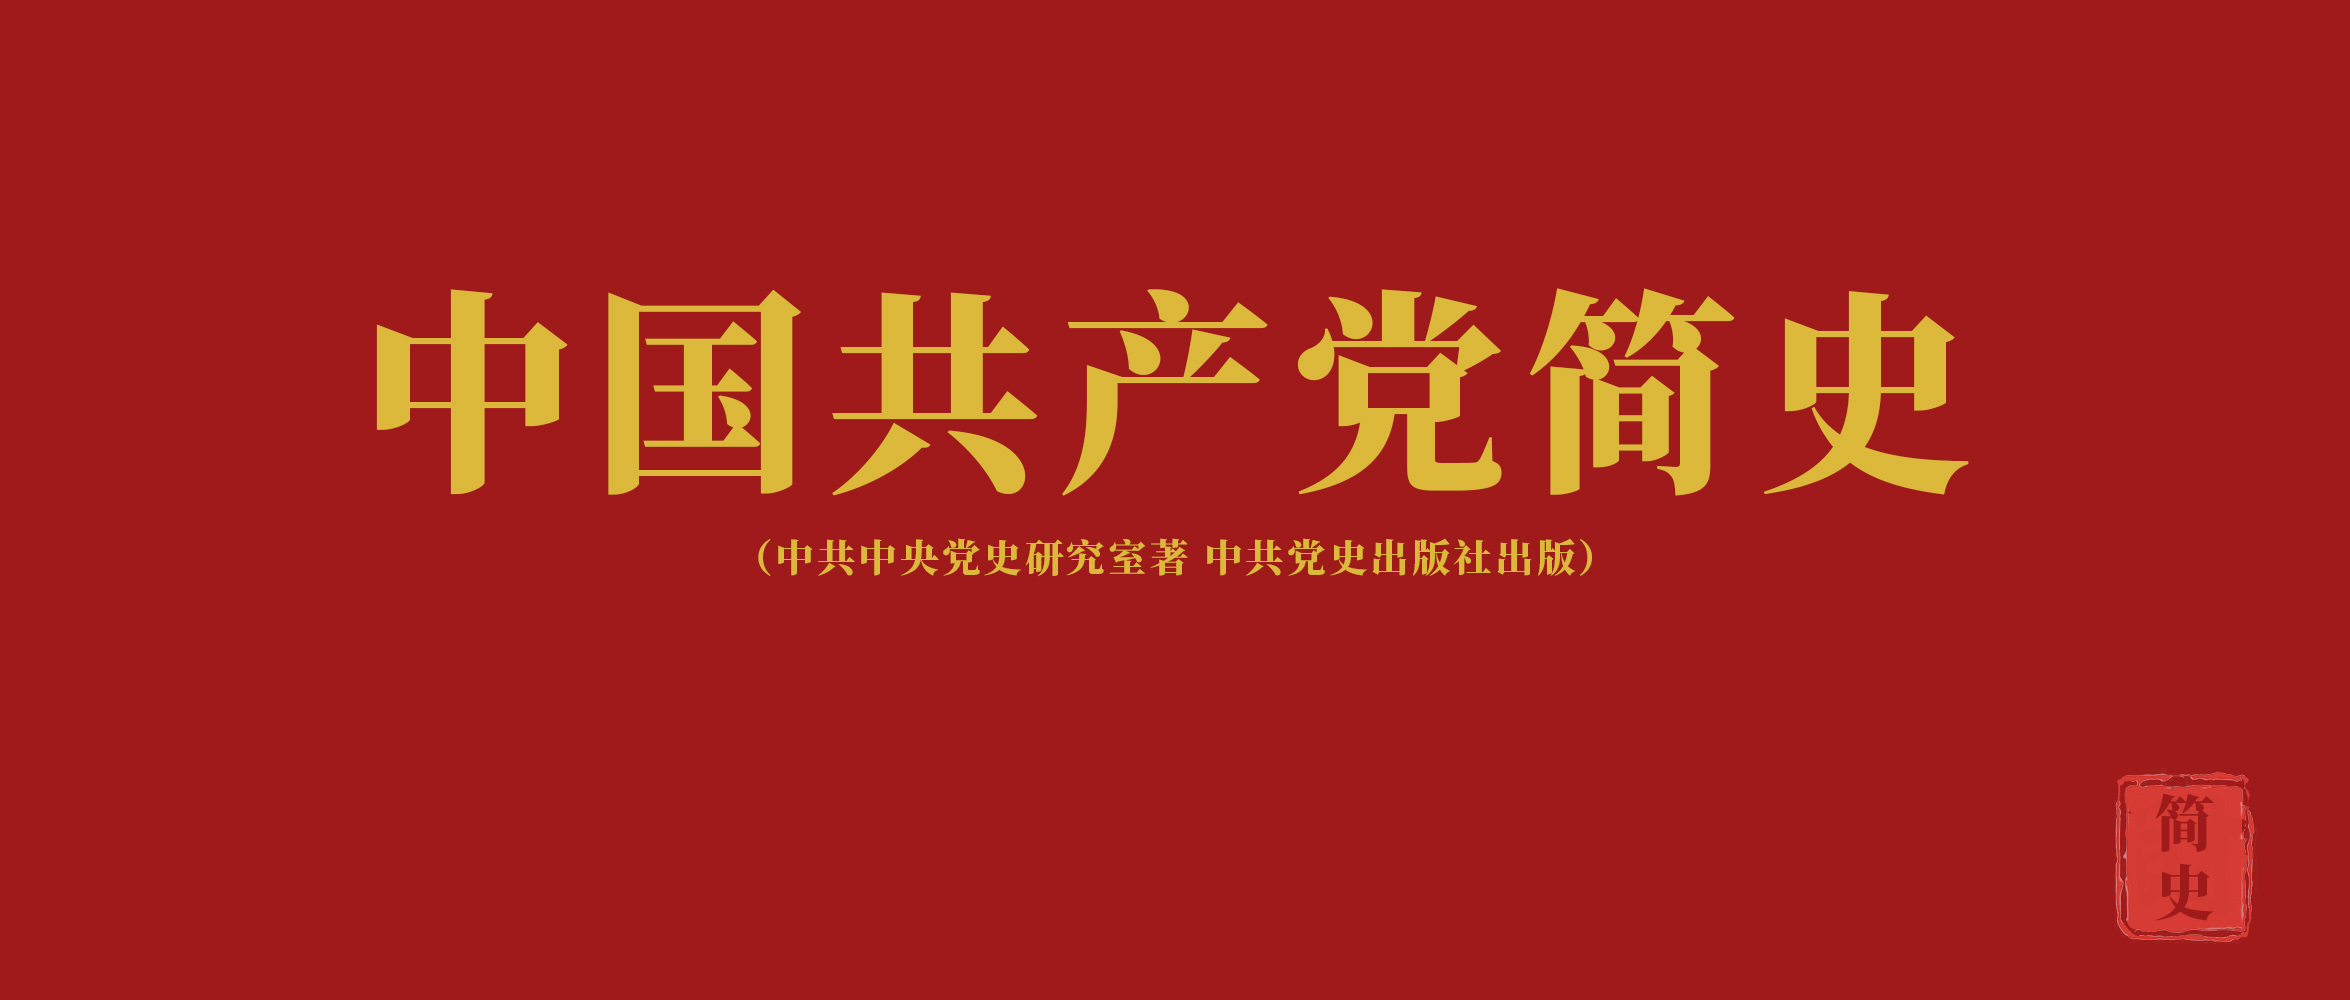 《中国共产党简史》第七章十年“文化大革命”的内乱